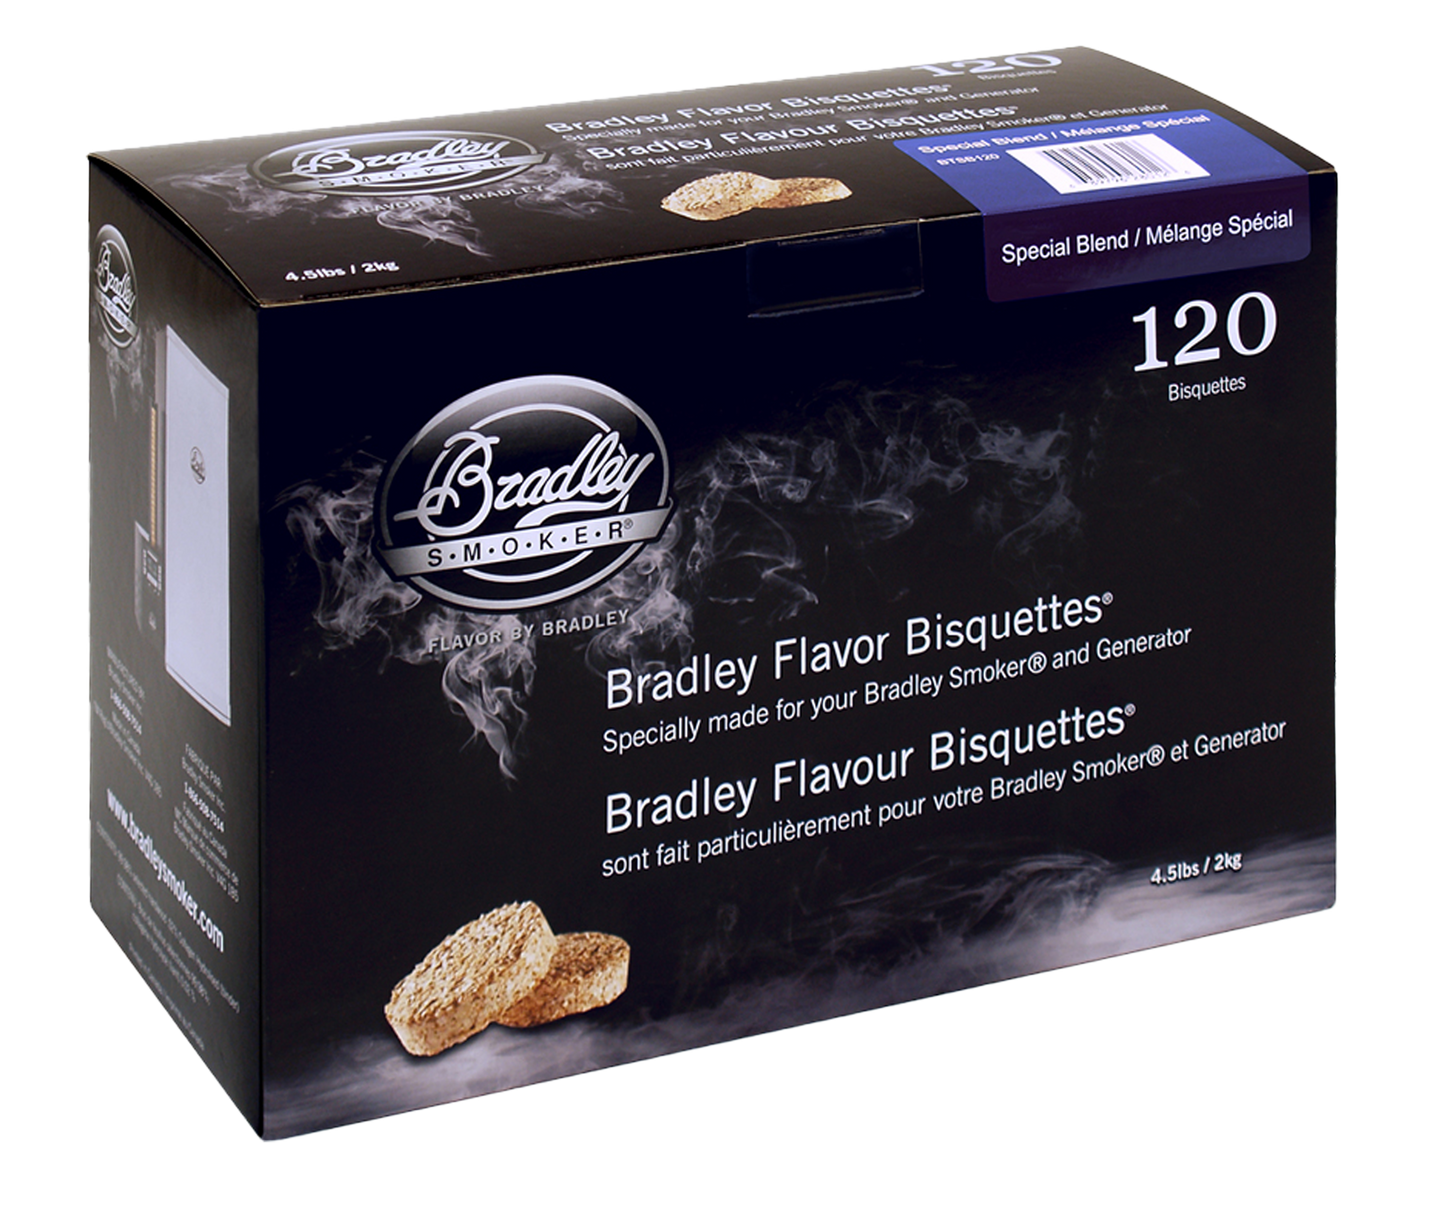 Specjalna mieszanka bisquettes dla palaczy Bradley